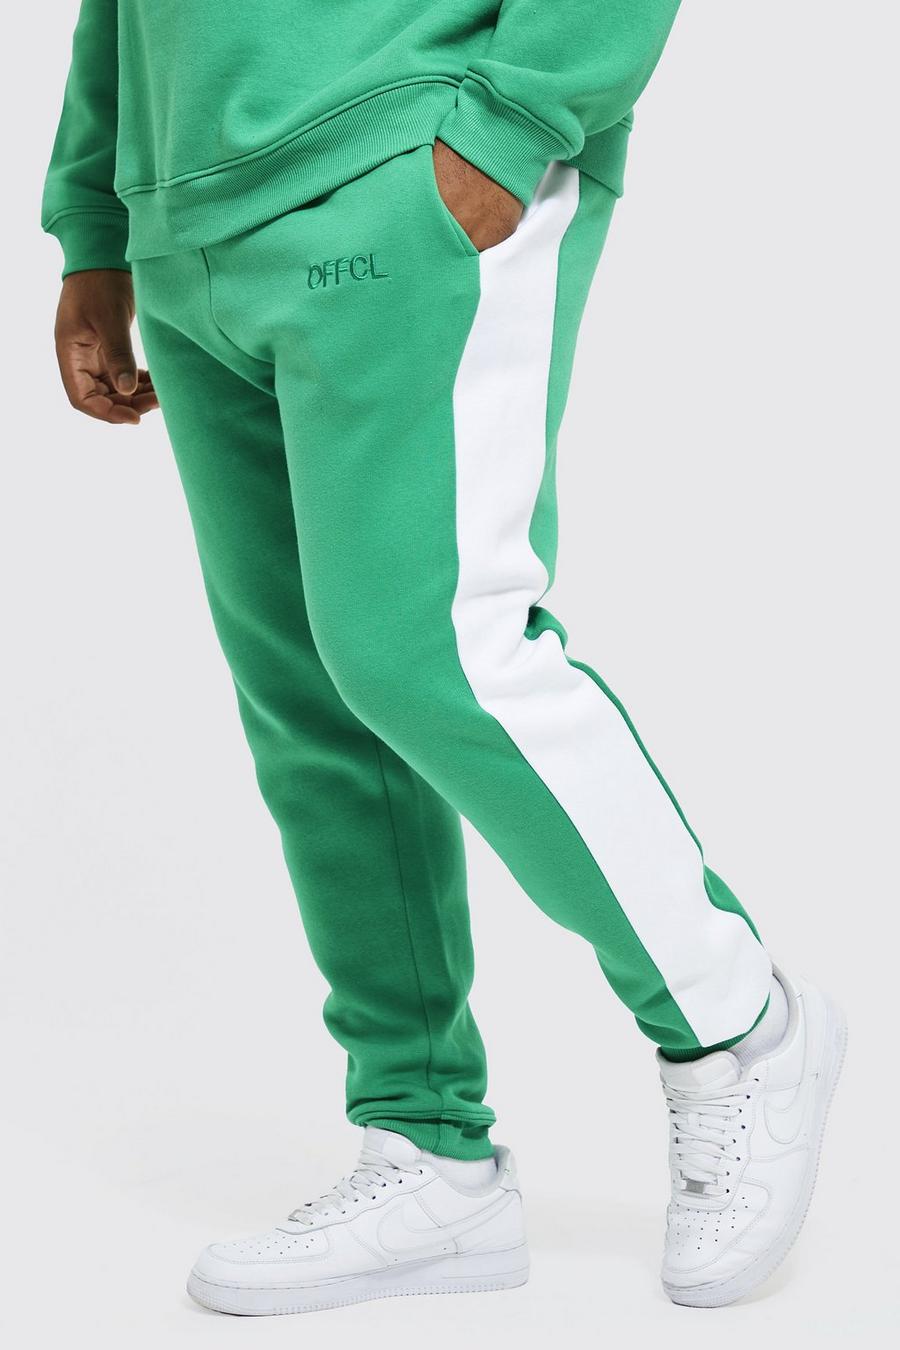 Pantalón deportivo Plus Offcl pitillo con panel lateral, Bright green gerde